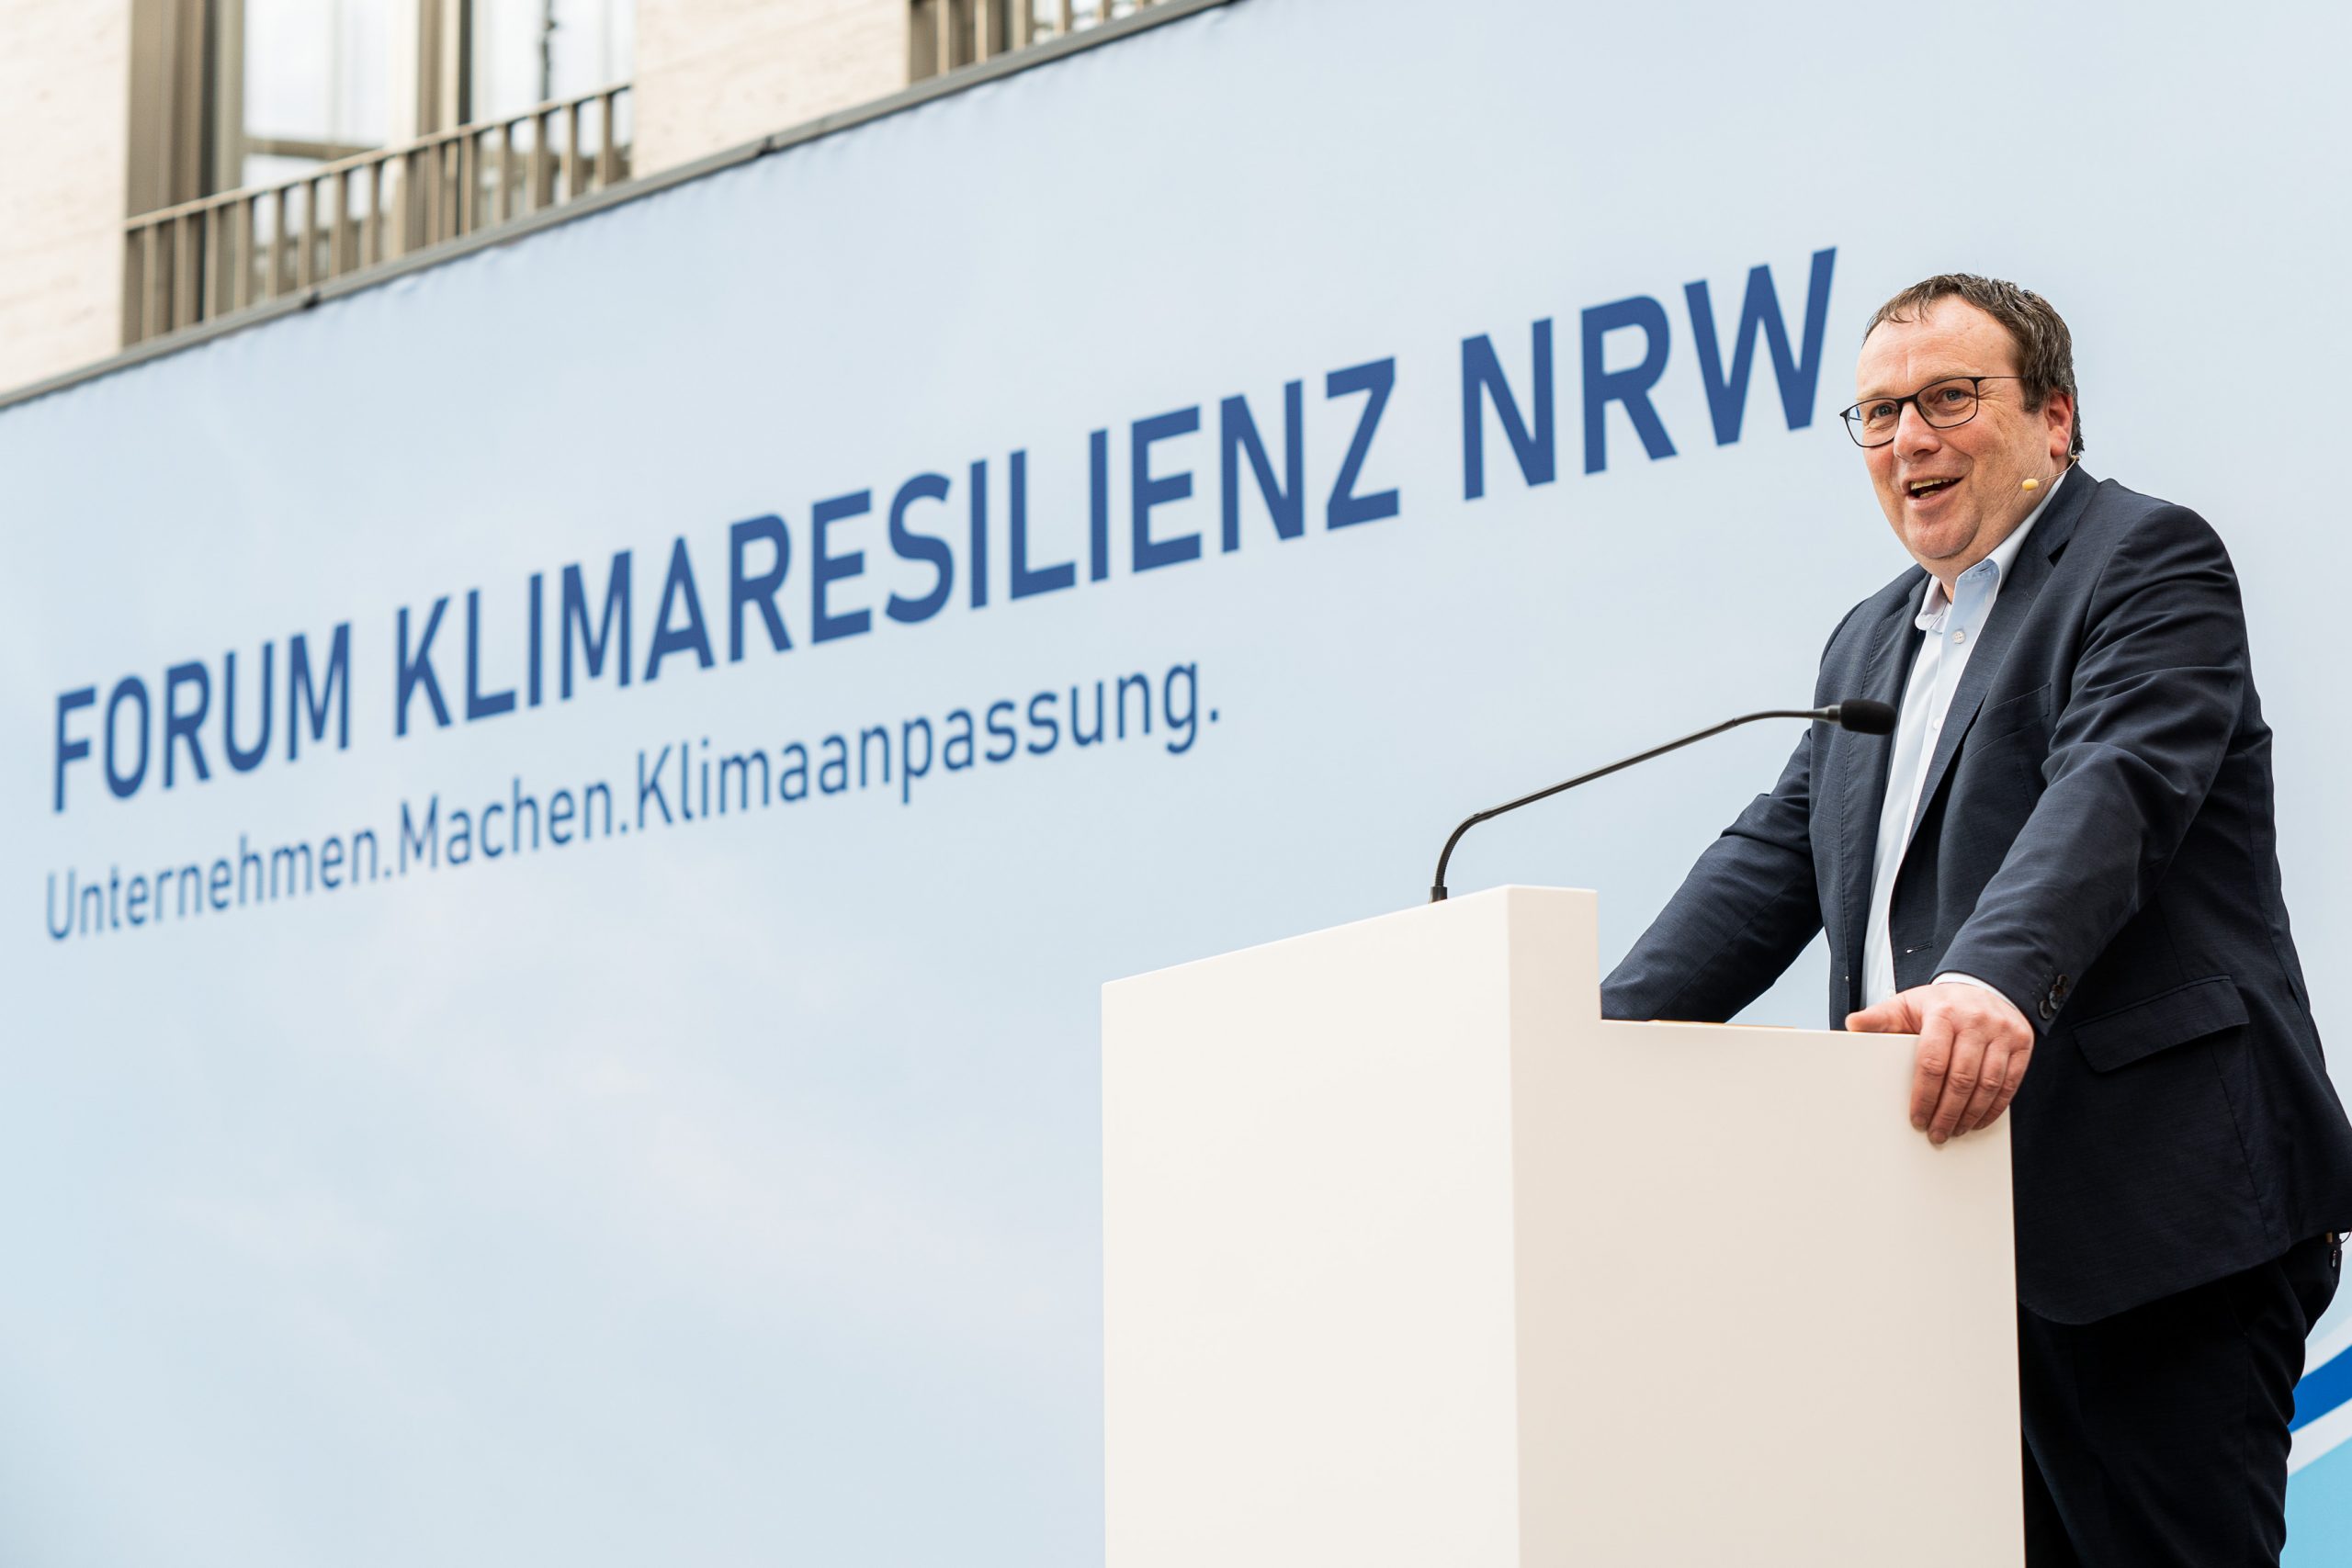 Minister Oliver Krischer beim Forum Klimaresilienz am 27. März. Foto: Udo Geisler.